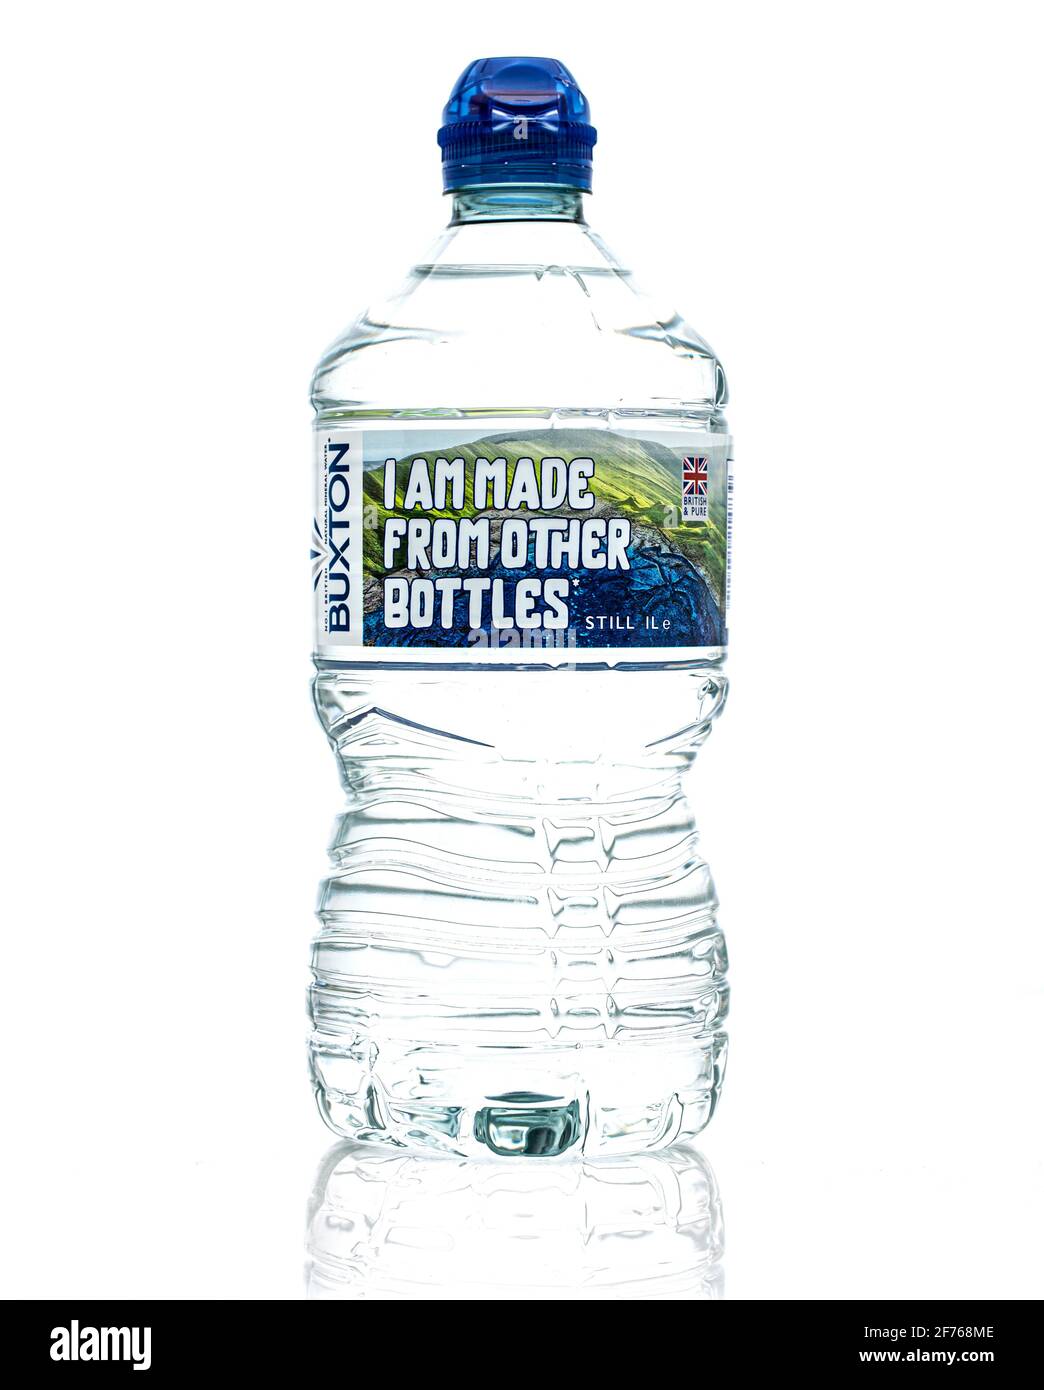 SWINDON, Großbritannien - 5. APRIL 2021: Flasche stilles Mineralwasser von Buxton auf weißem Grund Stockfoto